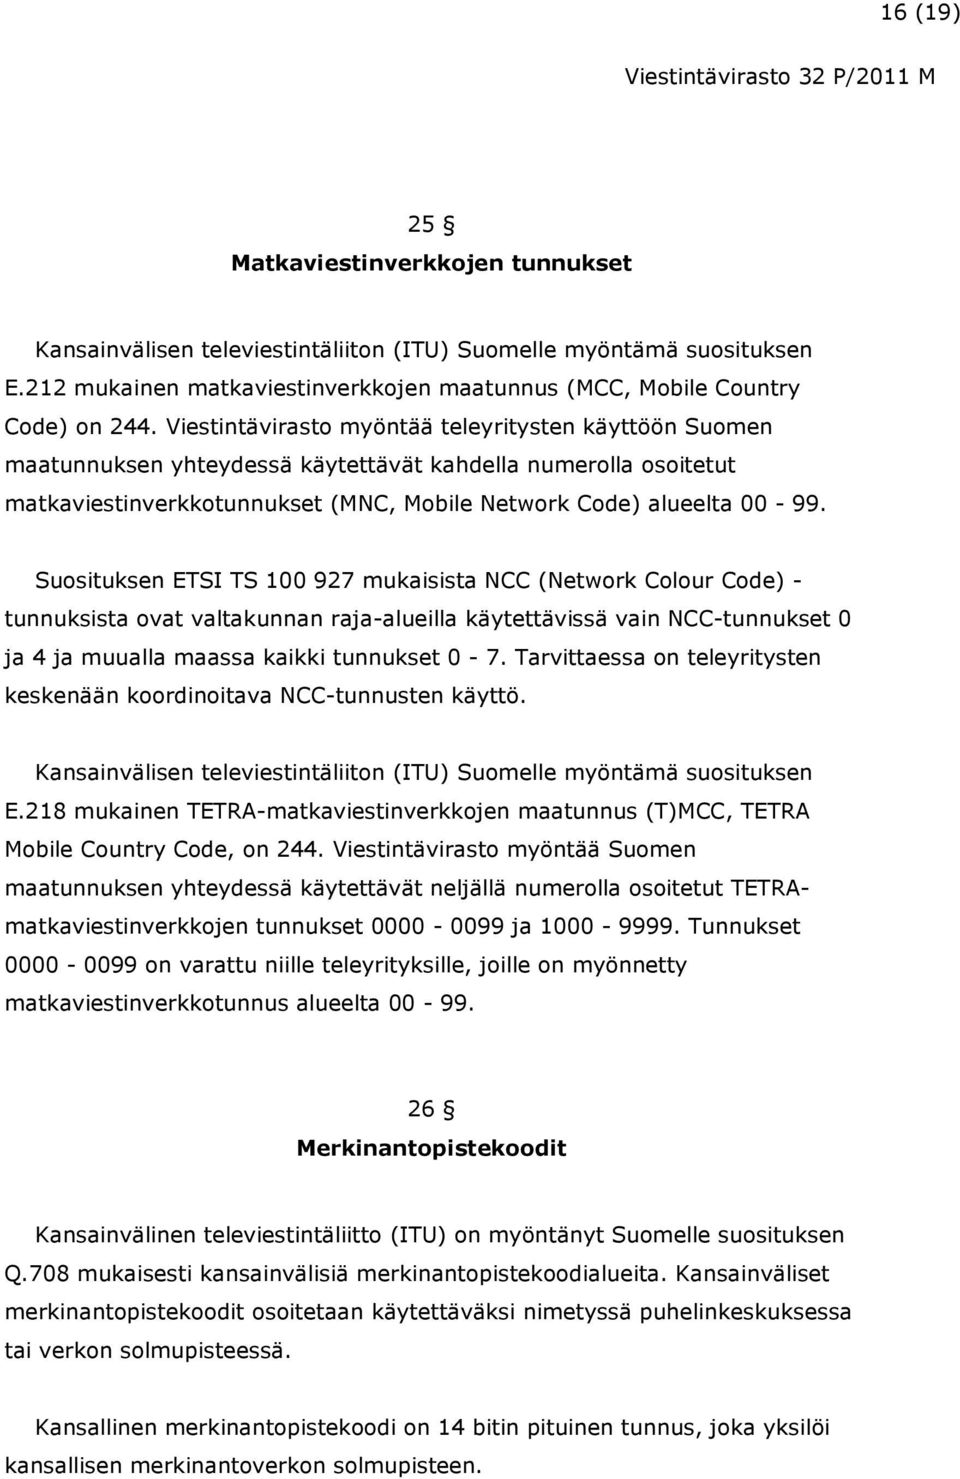 Suosituksen ETSI TS 100 927 mukaisista NCC (Network Colour Code) - tunnuksista ovat valtakunnan raja-alueilla käytettävissä vain NCC-tunnukset 0 ja 4 ja muualla maassa kaikki tunnukset 0-7.